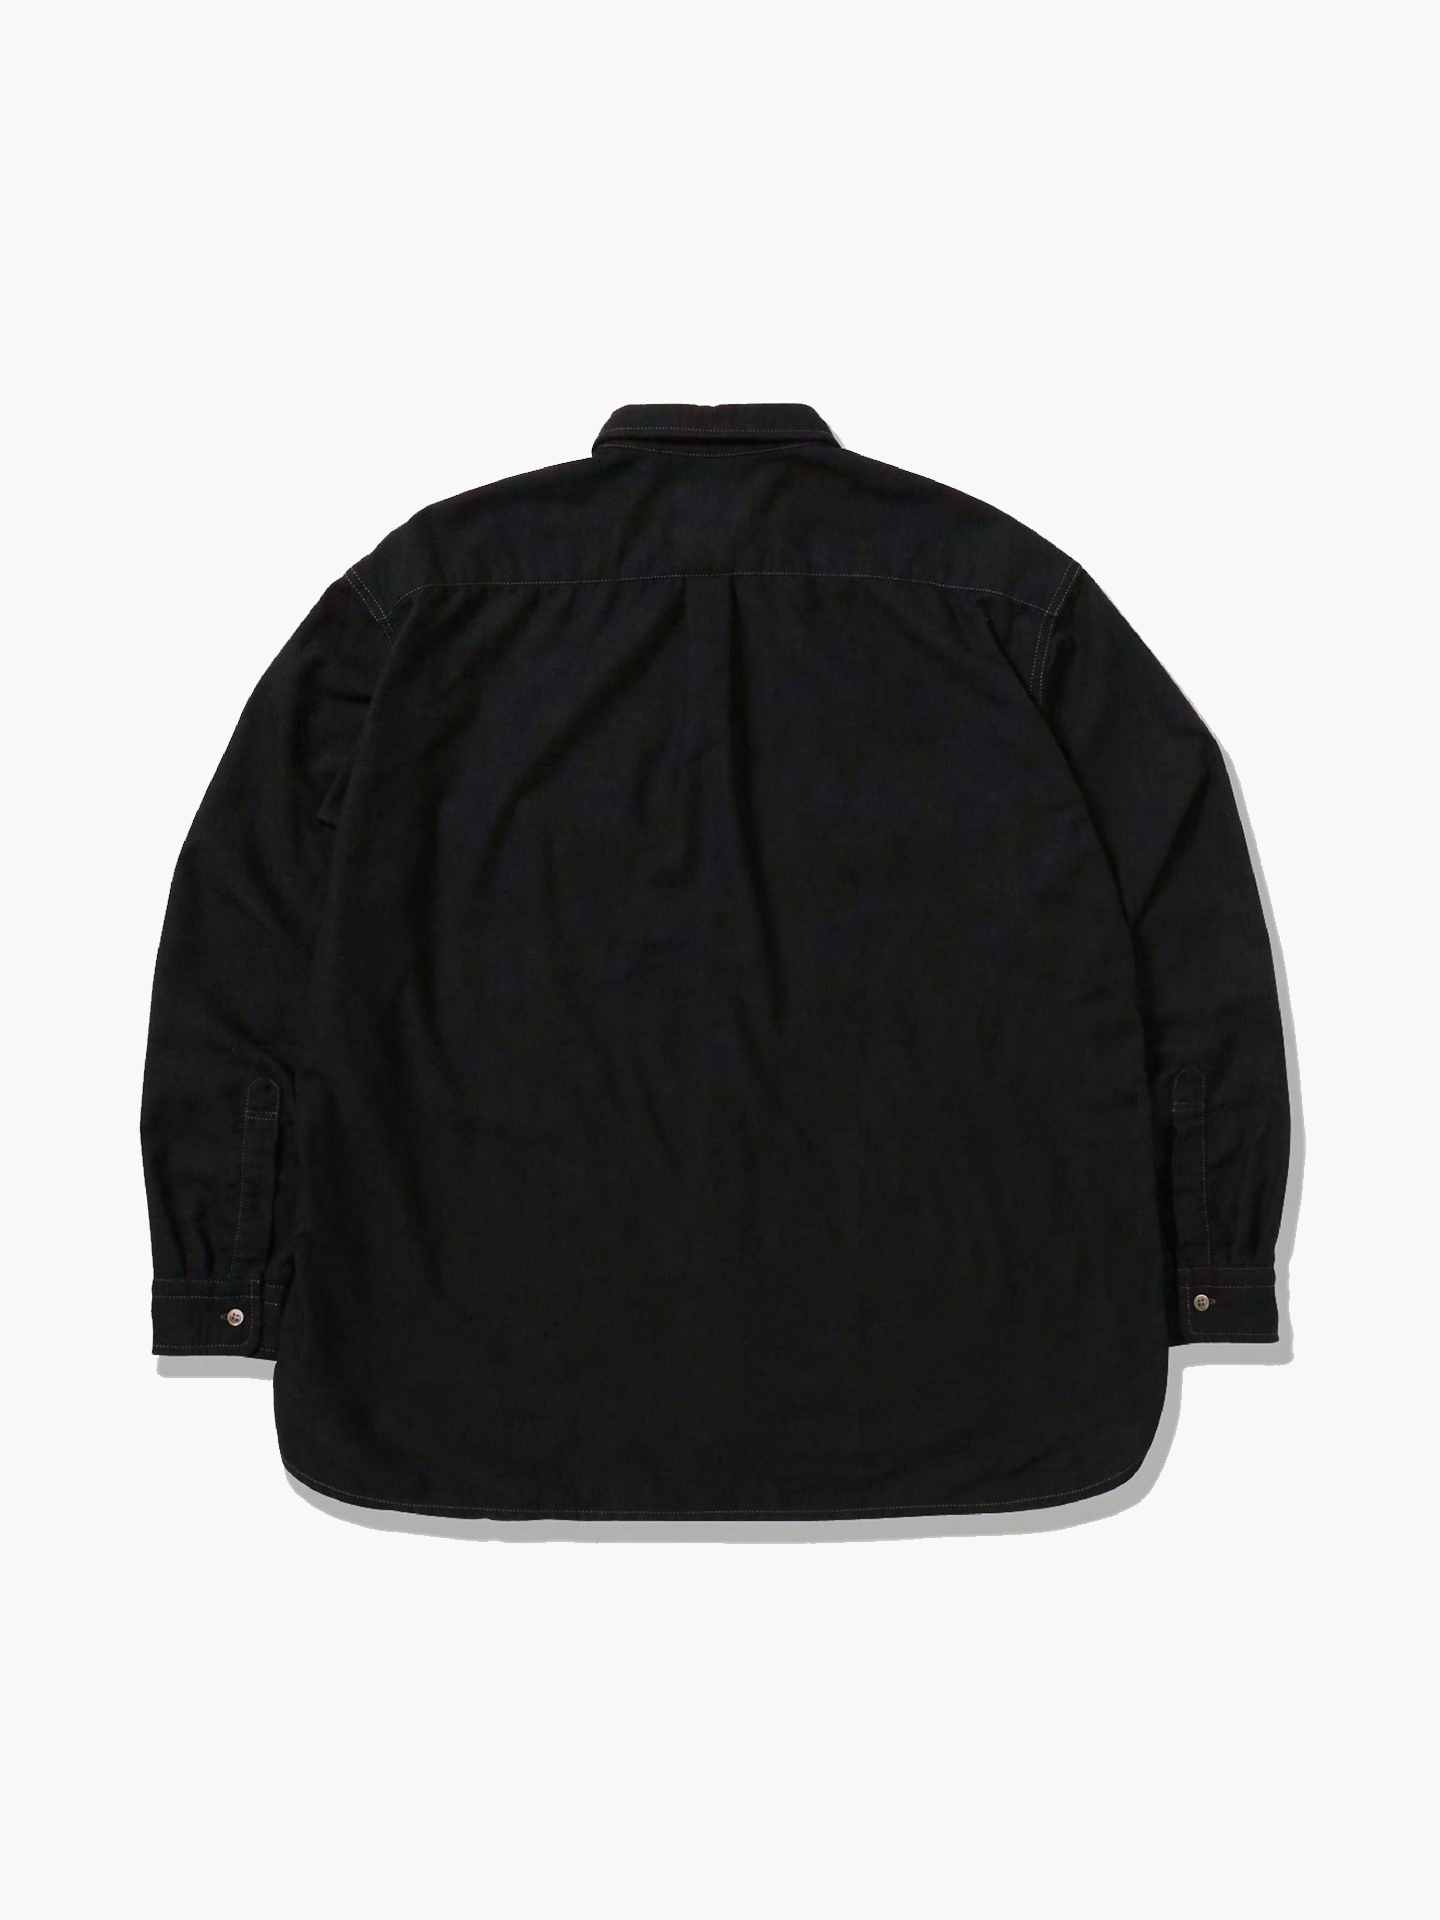 thermonel shirt (M) Рубашка, 58% хлопок,42% полиэстер, размер L, черный